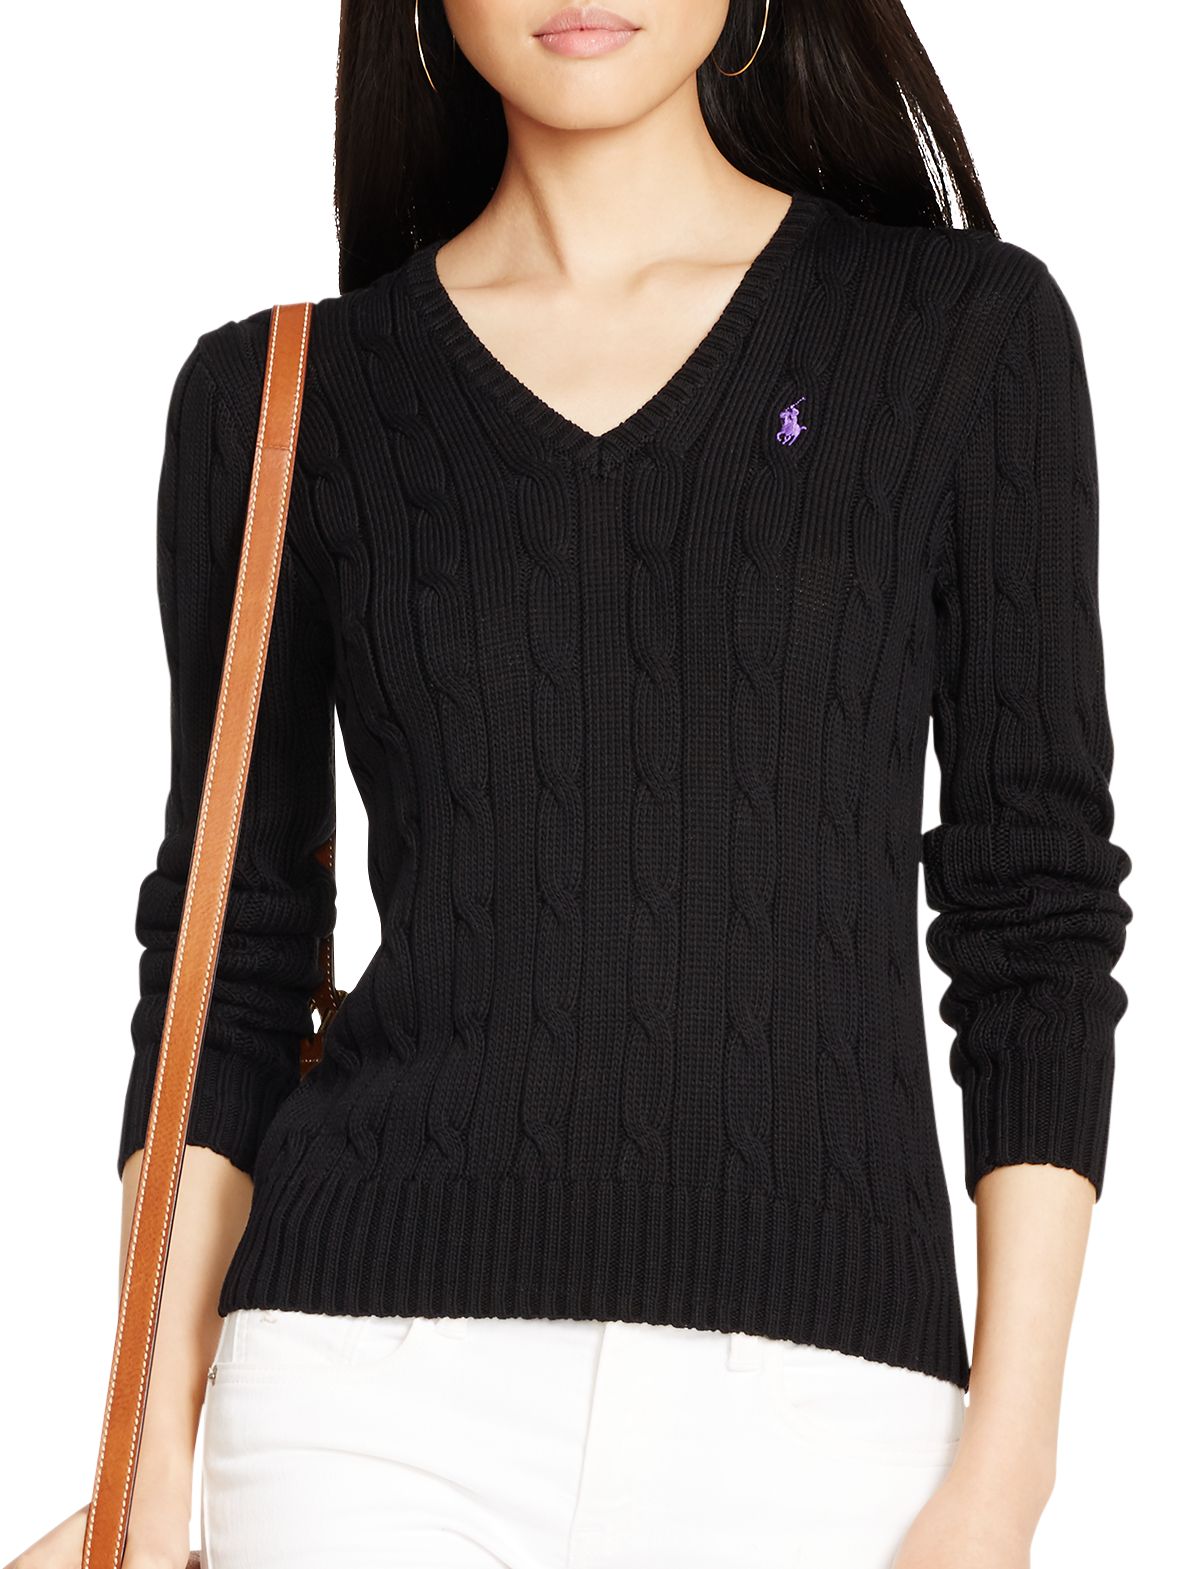 ralph lauren black cable knit sweater